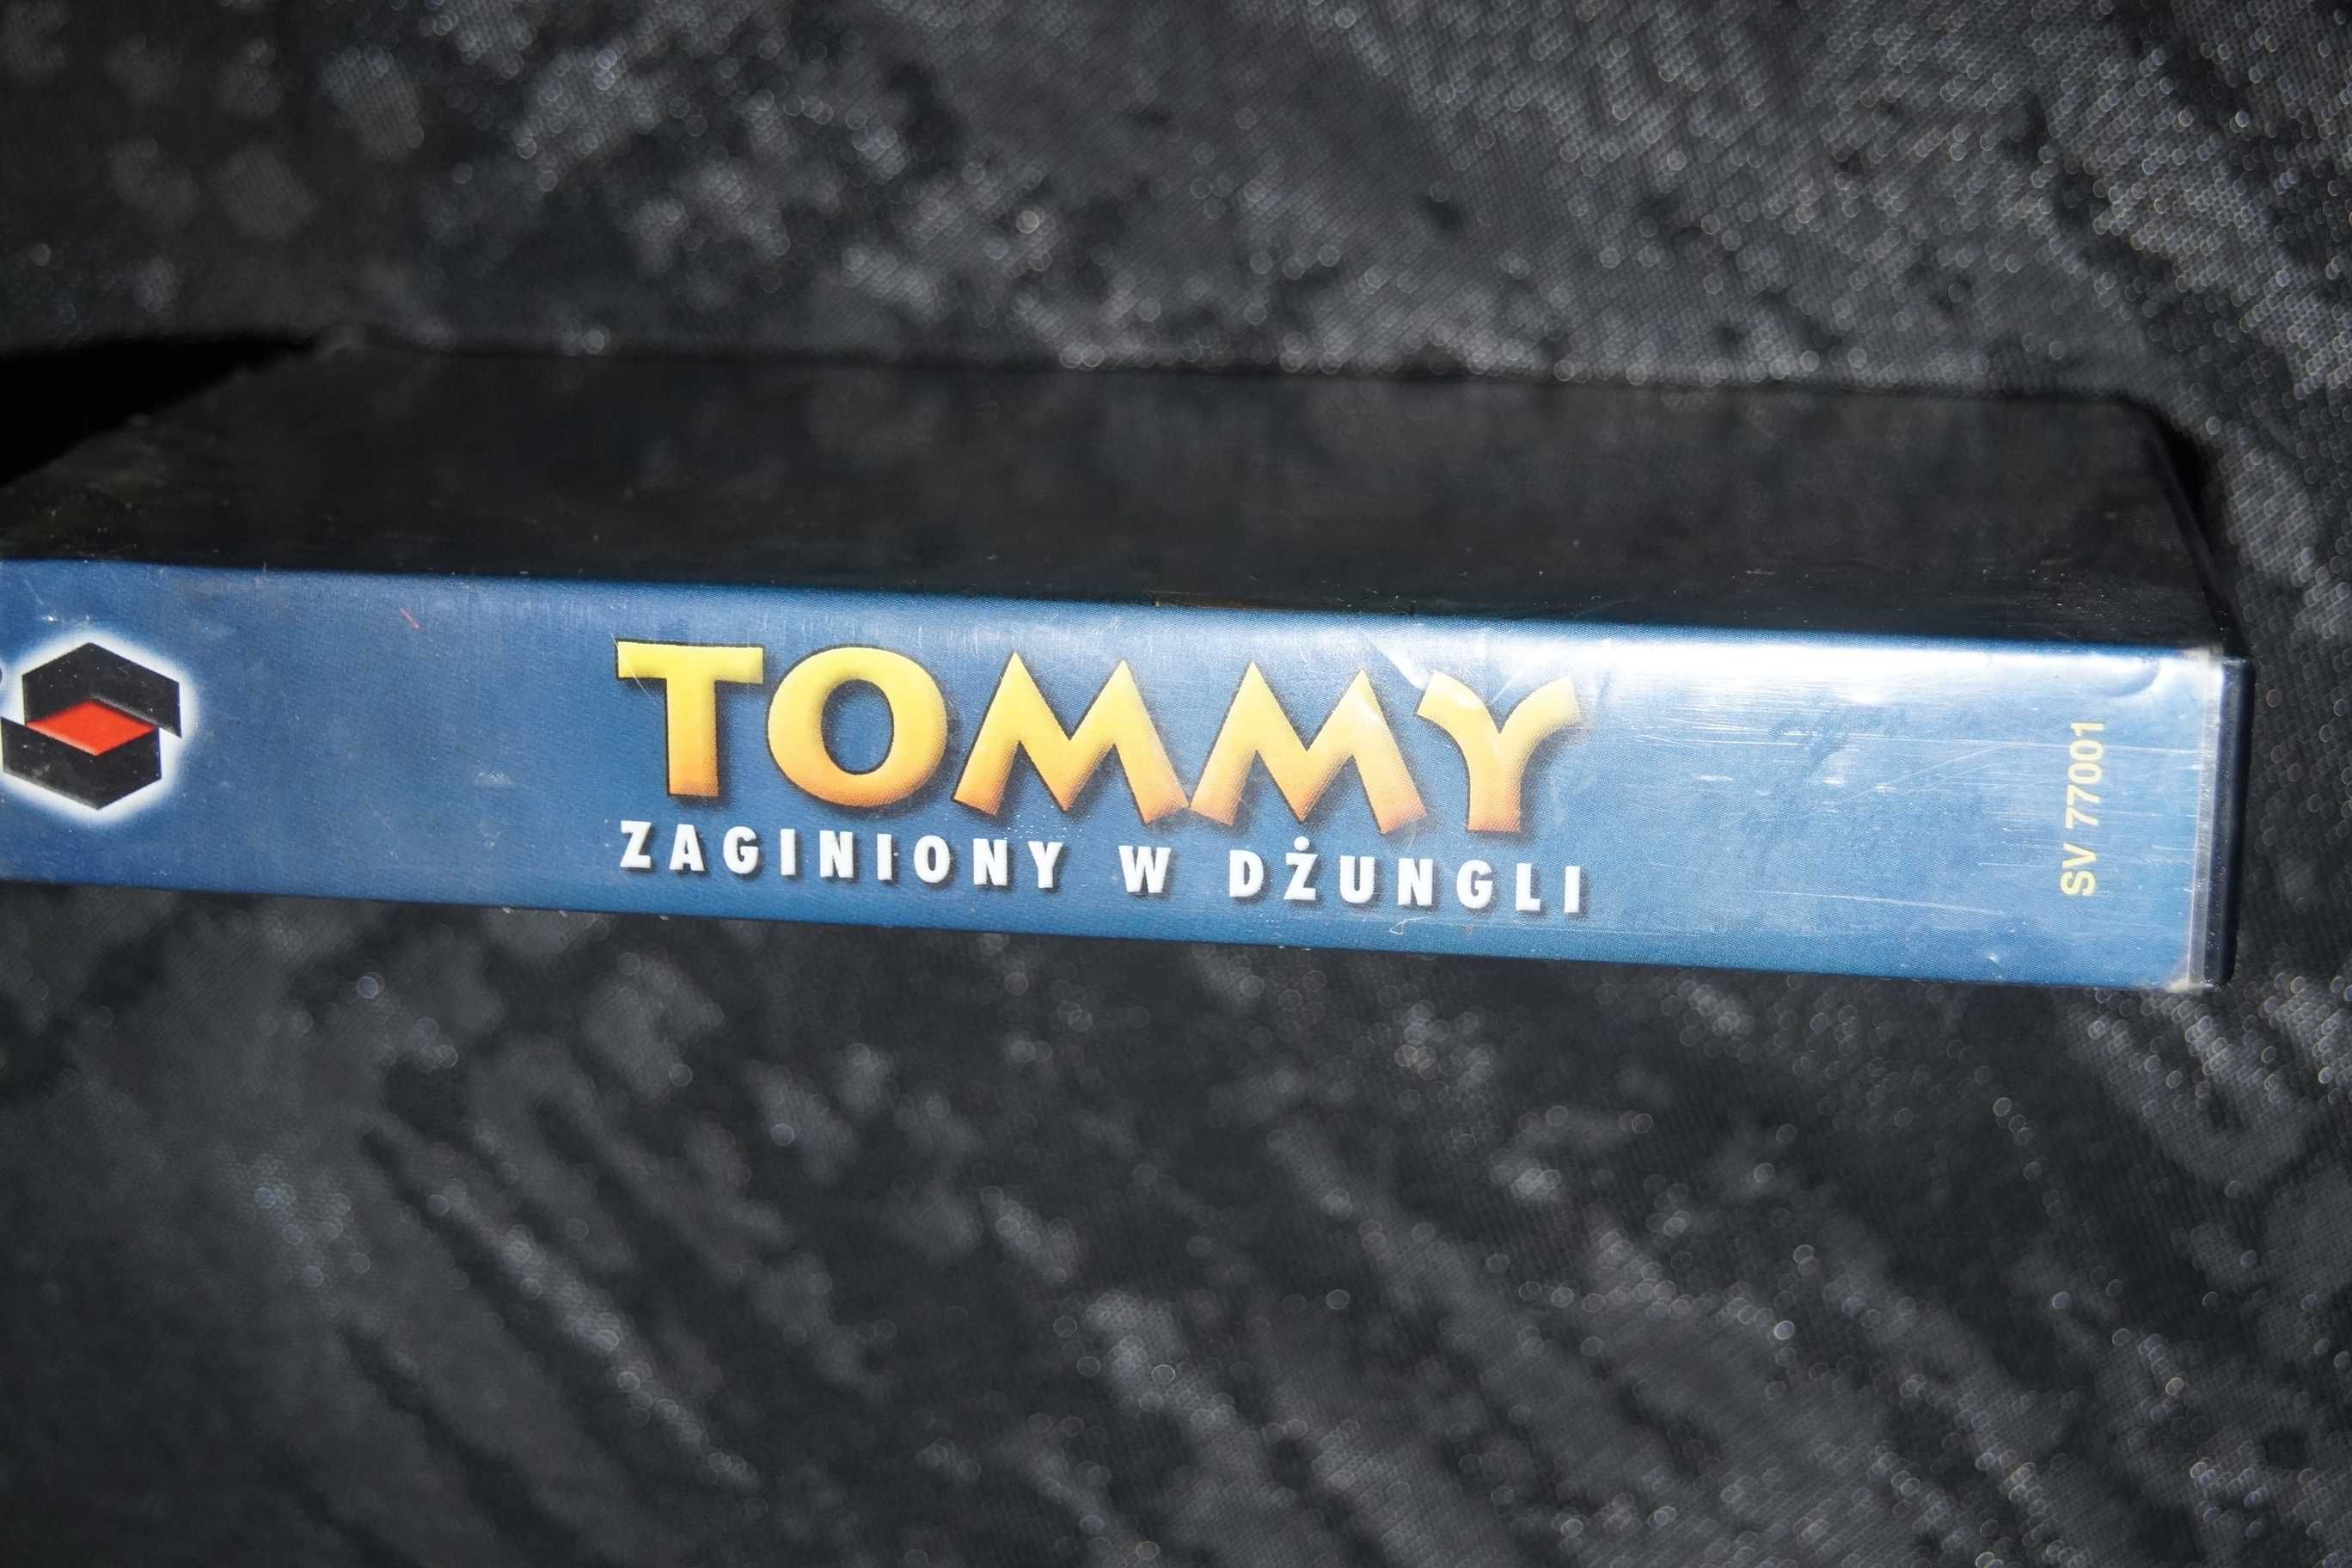 Tommy zaginiony w dżungli kaseta VHS video